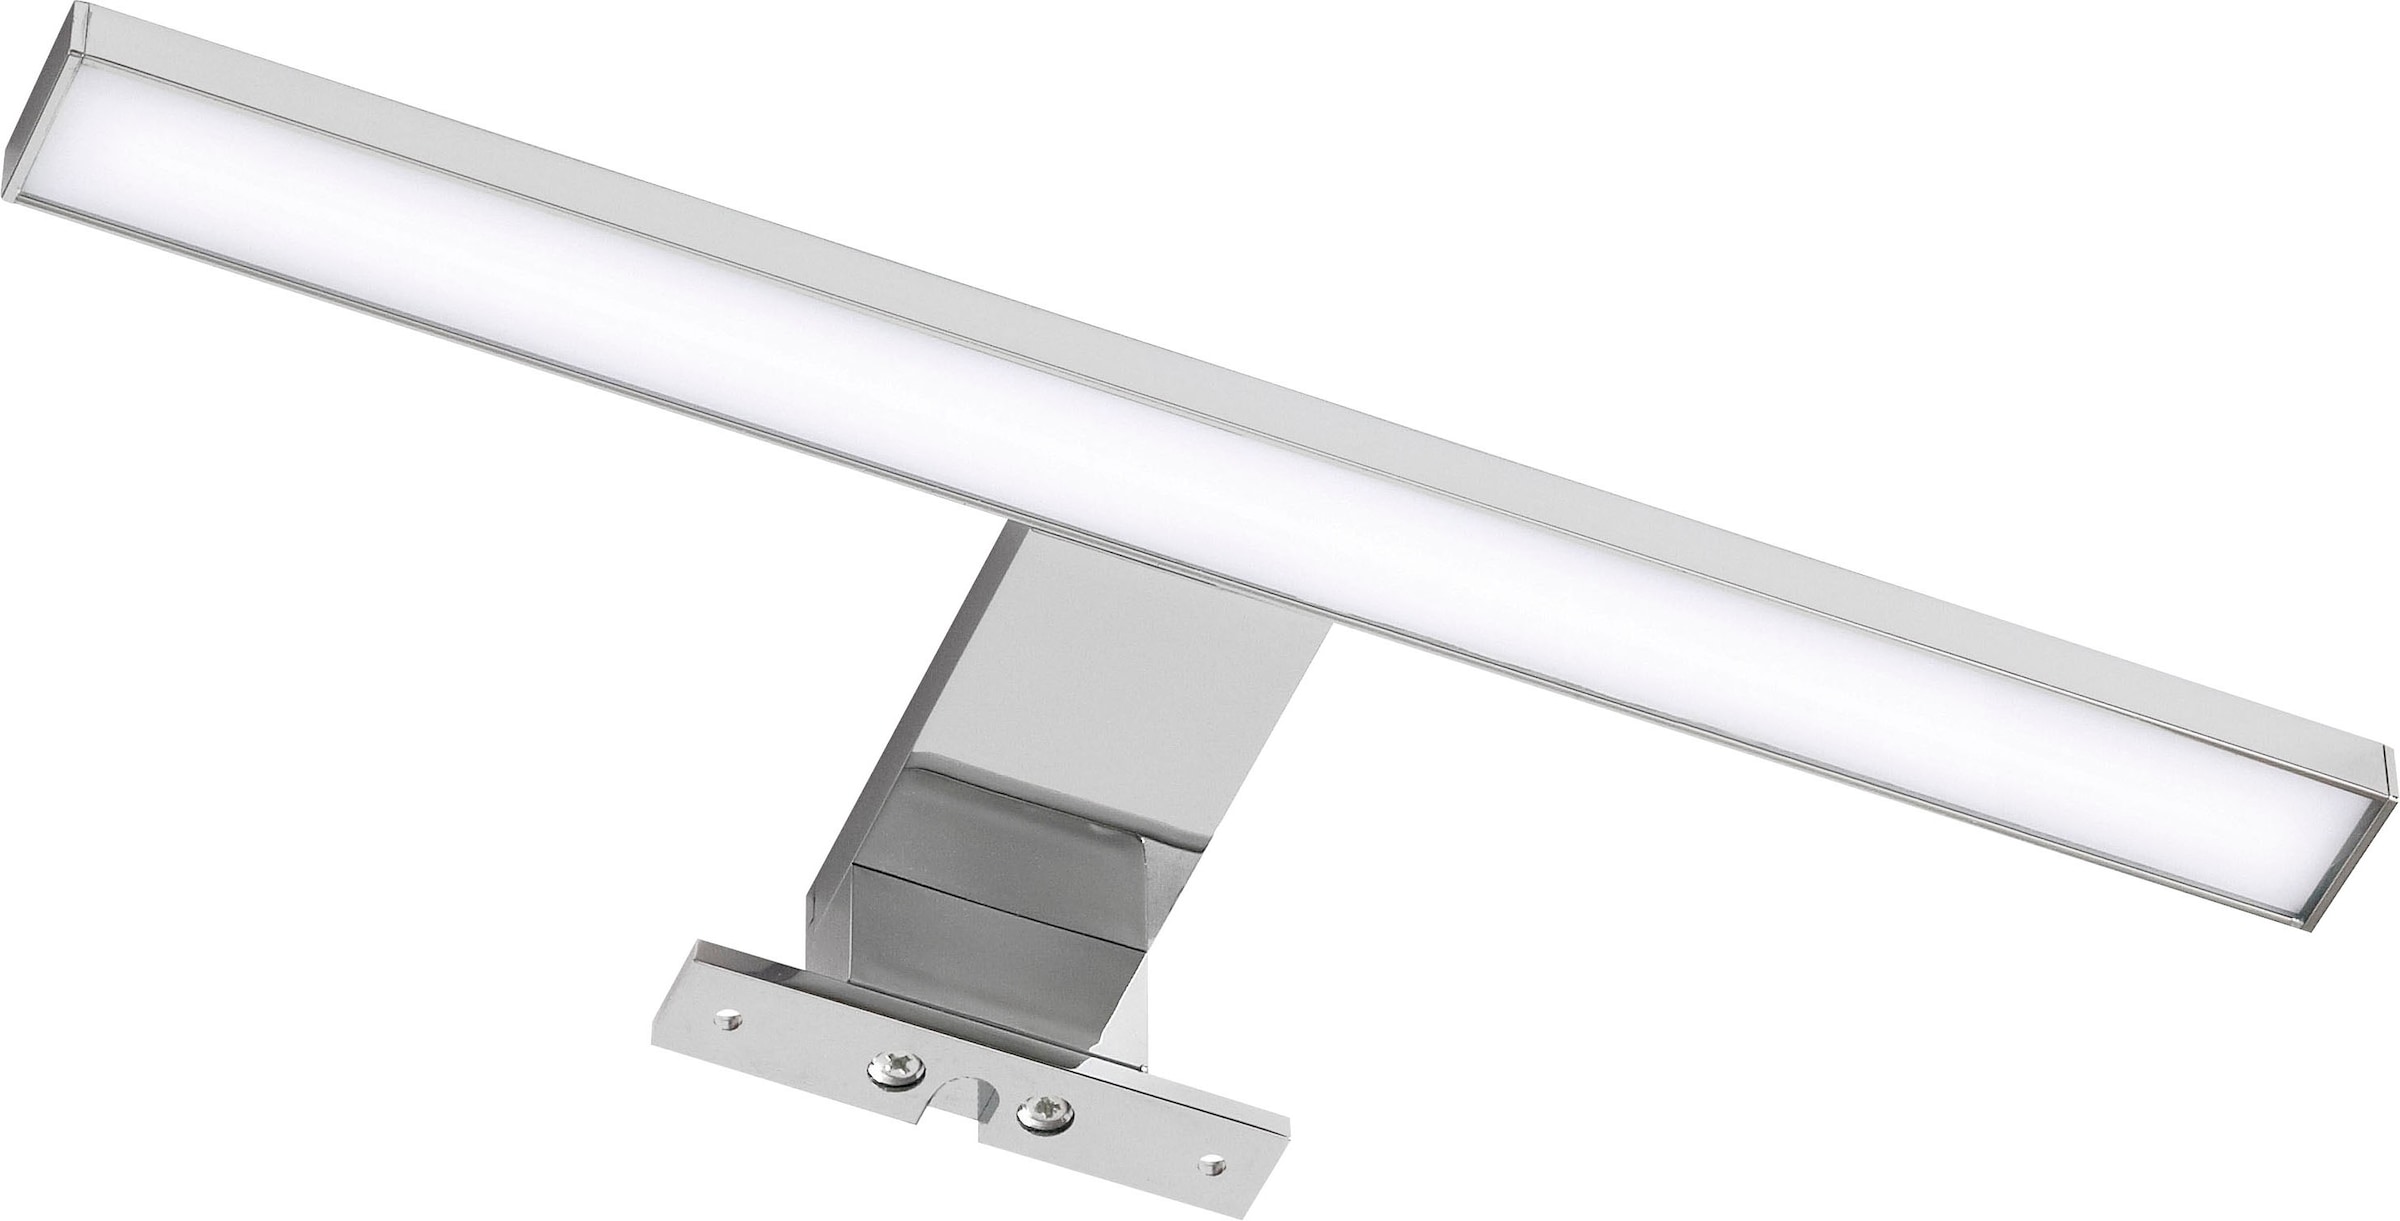 Saphir LED Spiegelleuchte »Quickset LED-Aufsatzleuchte für Spiegel o. Spiegelschrank, Chrom Glanz«, Badlampe 30 cm breit, Lichtfarbe kaltweiß, Kunststoff, 480 LM, 6500K